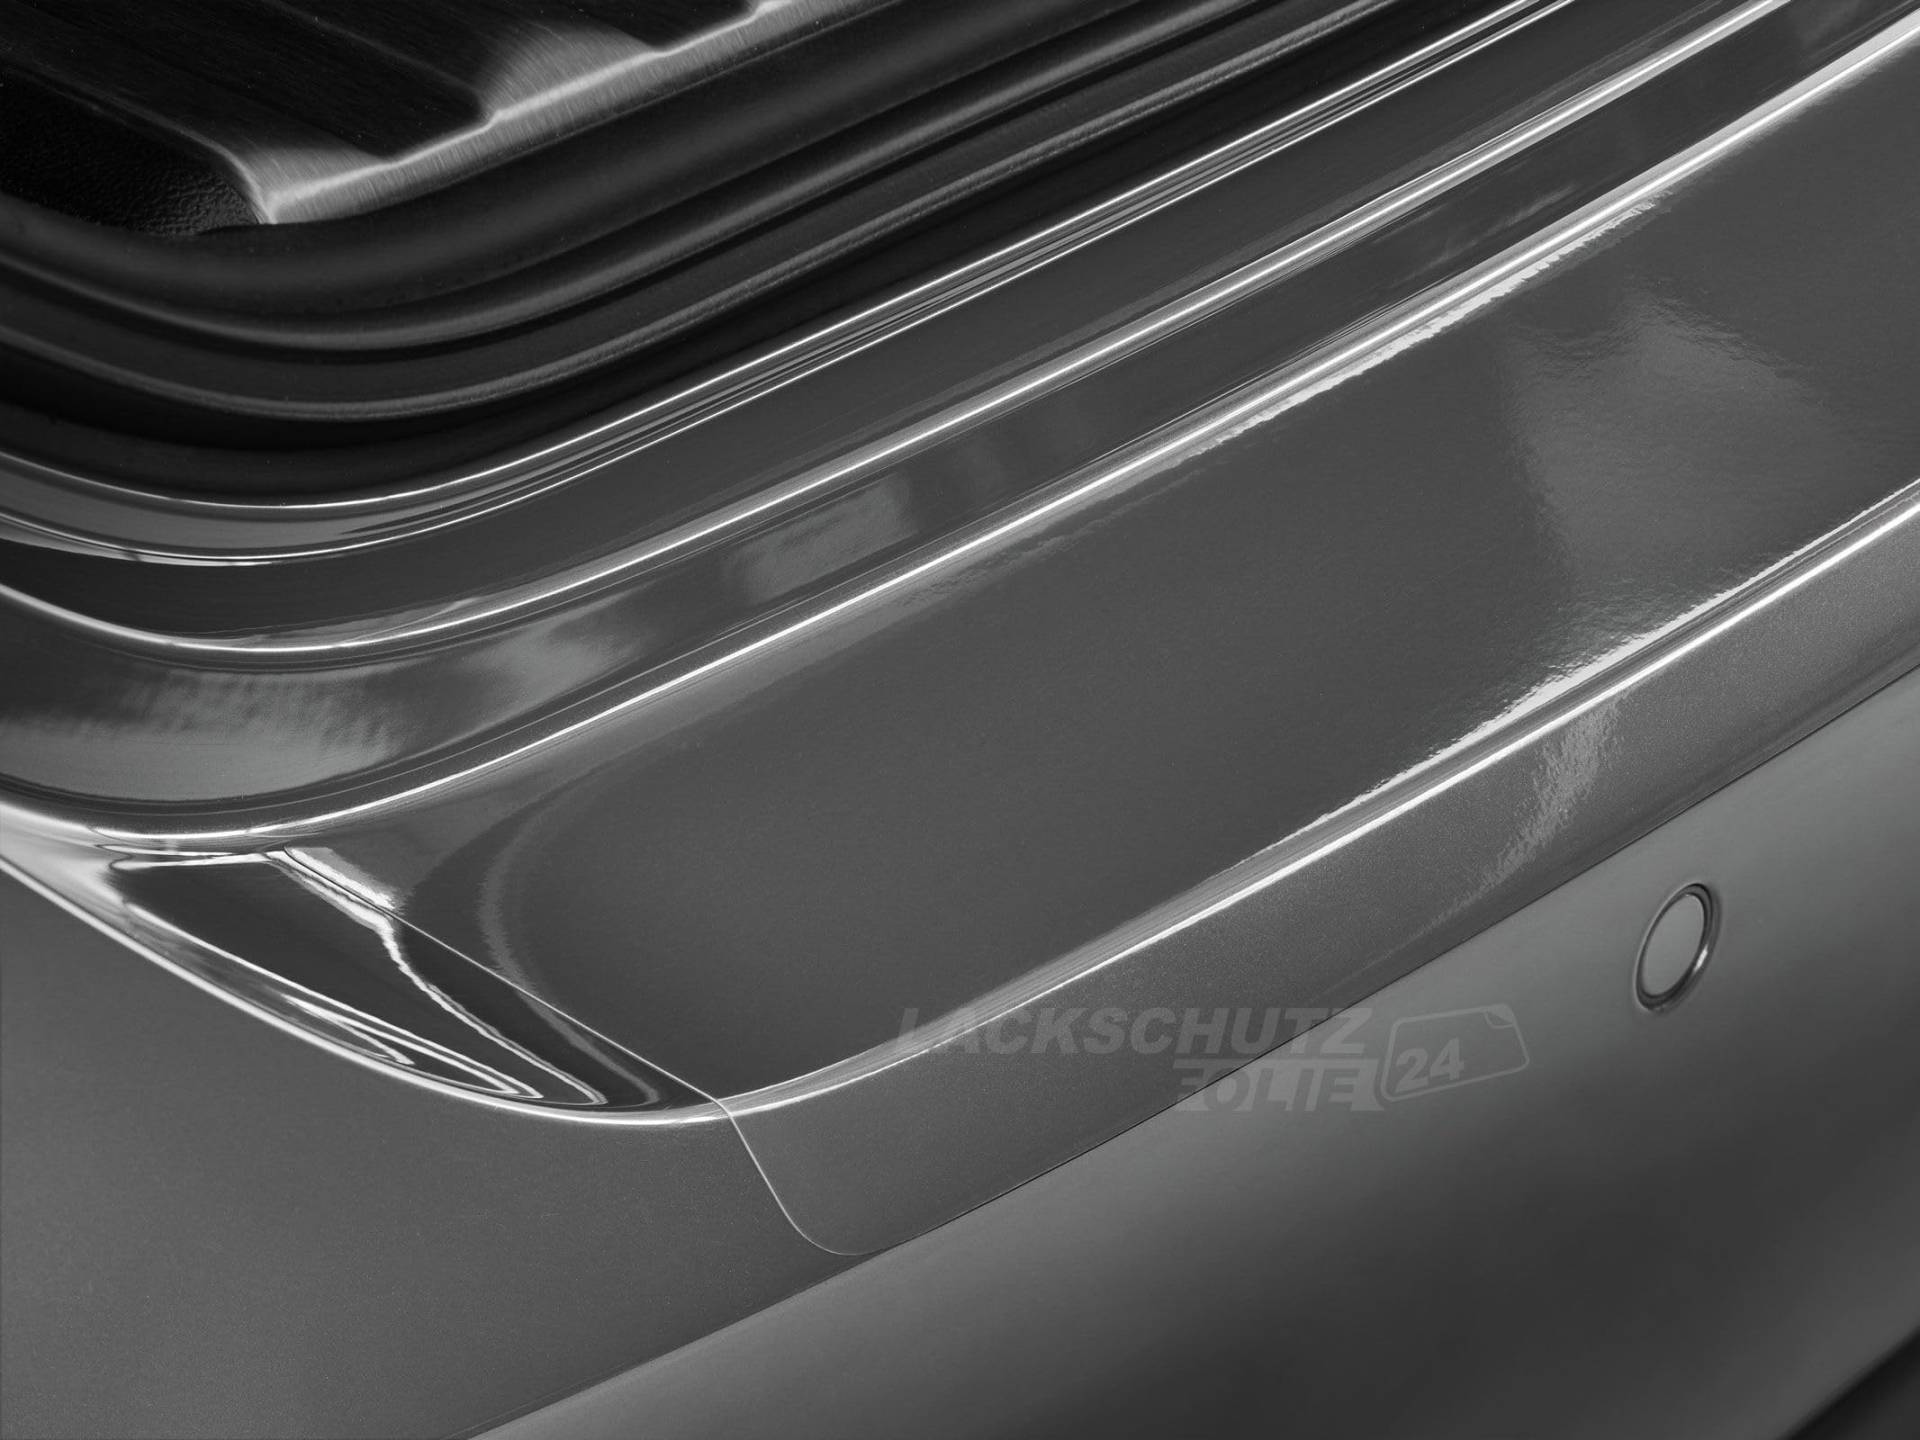 LSF24 - Ladekantenschutzfolie - Transparent Glatt Hochglänzend für Audi A3 Sportback Typ 8V, BJ 02/2013-2020 von Lackschutzfolie24